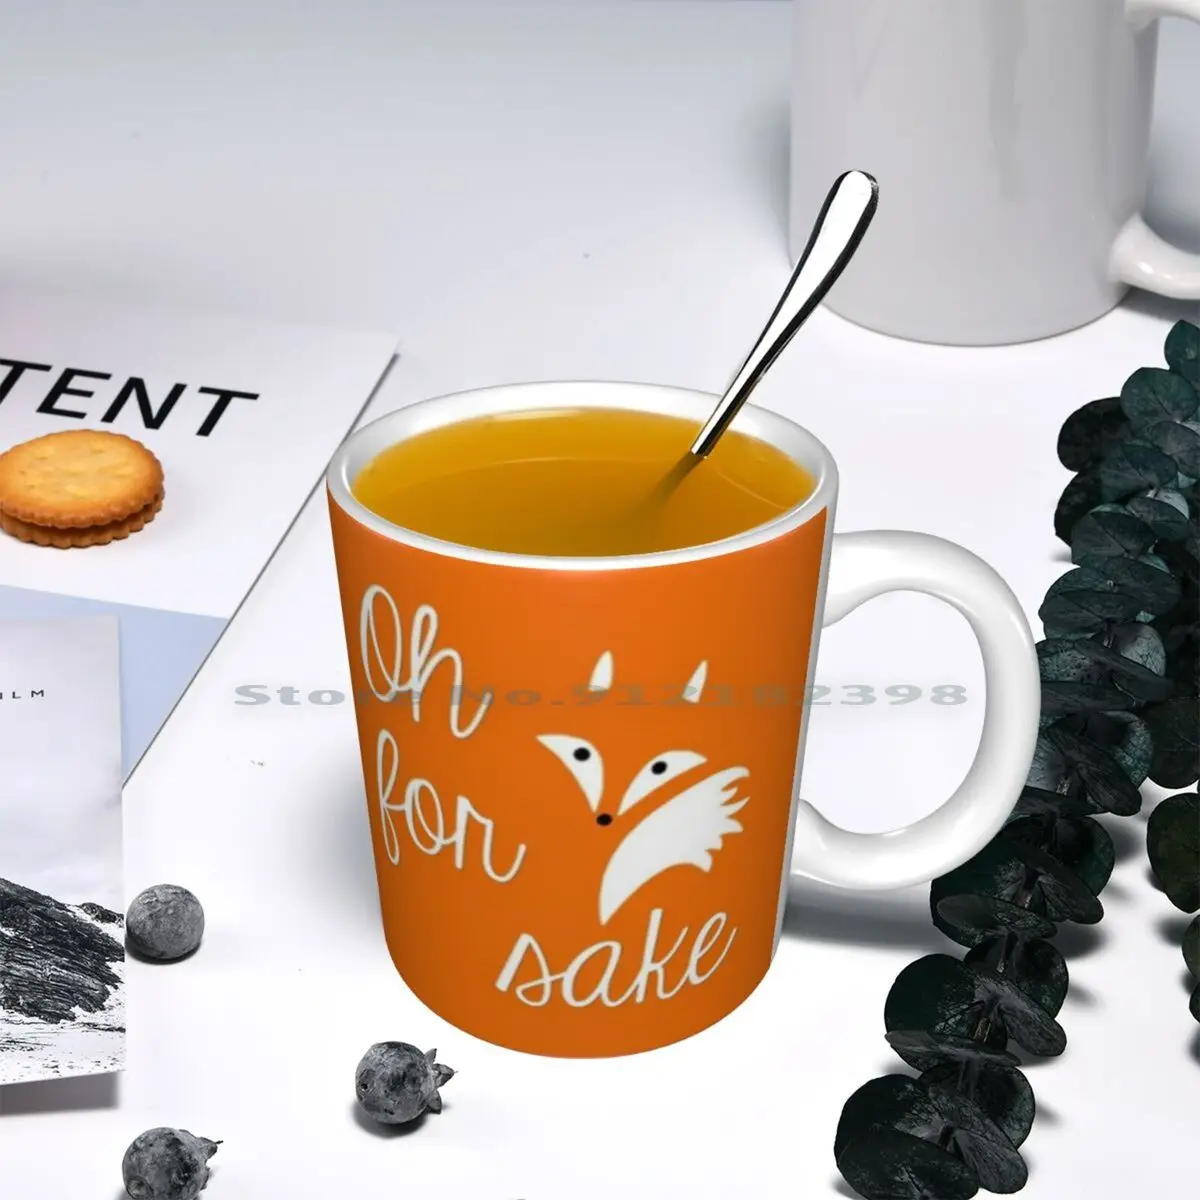 Oh For Fox Sake Ceramic Mugs Coffee Cups Milk Tea Mug Oh For Fox Sake Funny Joke Jokes Pun Animal Tail Cute Orange Creative images - 6